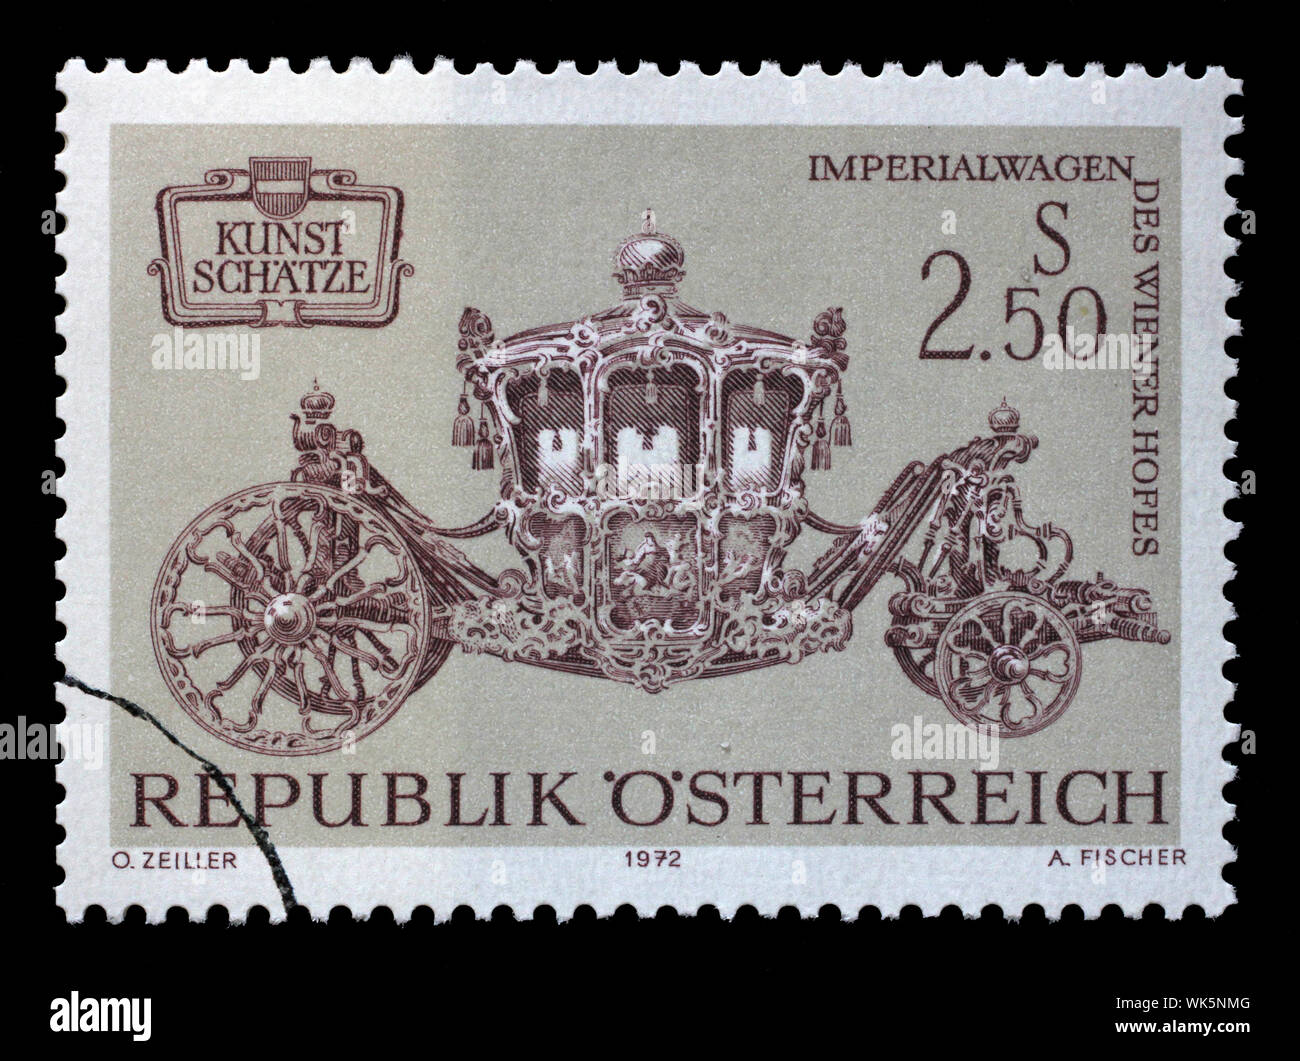 Timbre émis à l'Autriche montre les trésors de l'Art en Autriche - Les véhicules, l'Impériale a l'initiative de la cour de Vienne, vers 1972. Banque D'Images